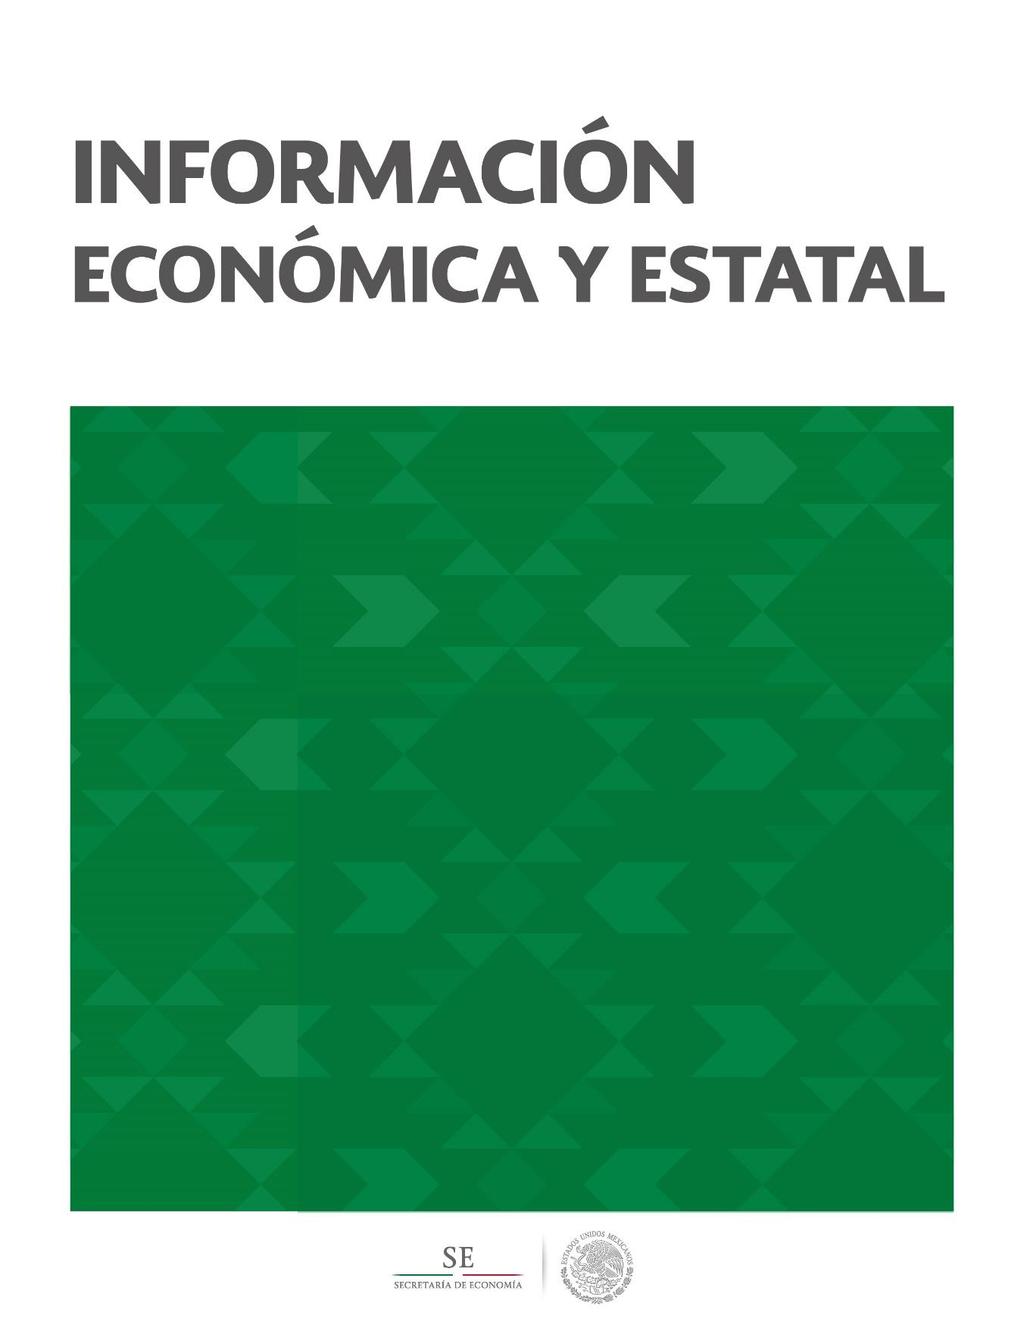 Sonora Contenido Geografía y Población 2 Actividad Económica 5 Sector